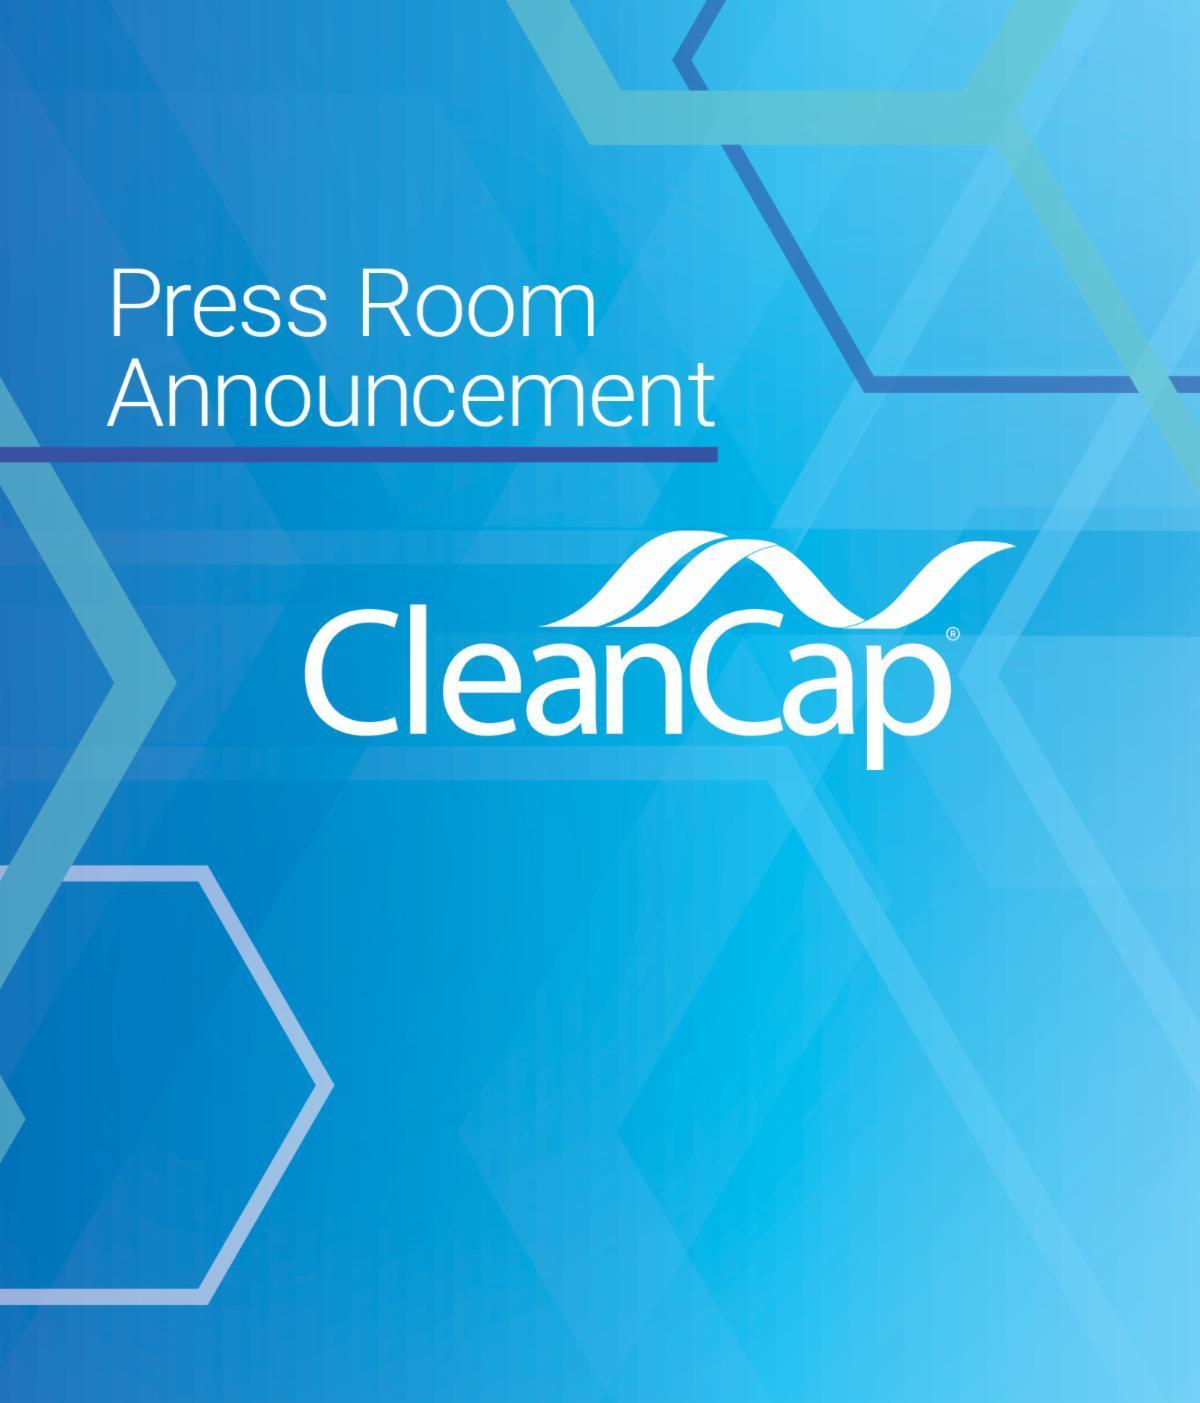 Press Room Announcement Clean Cap.jpg